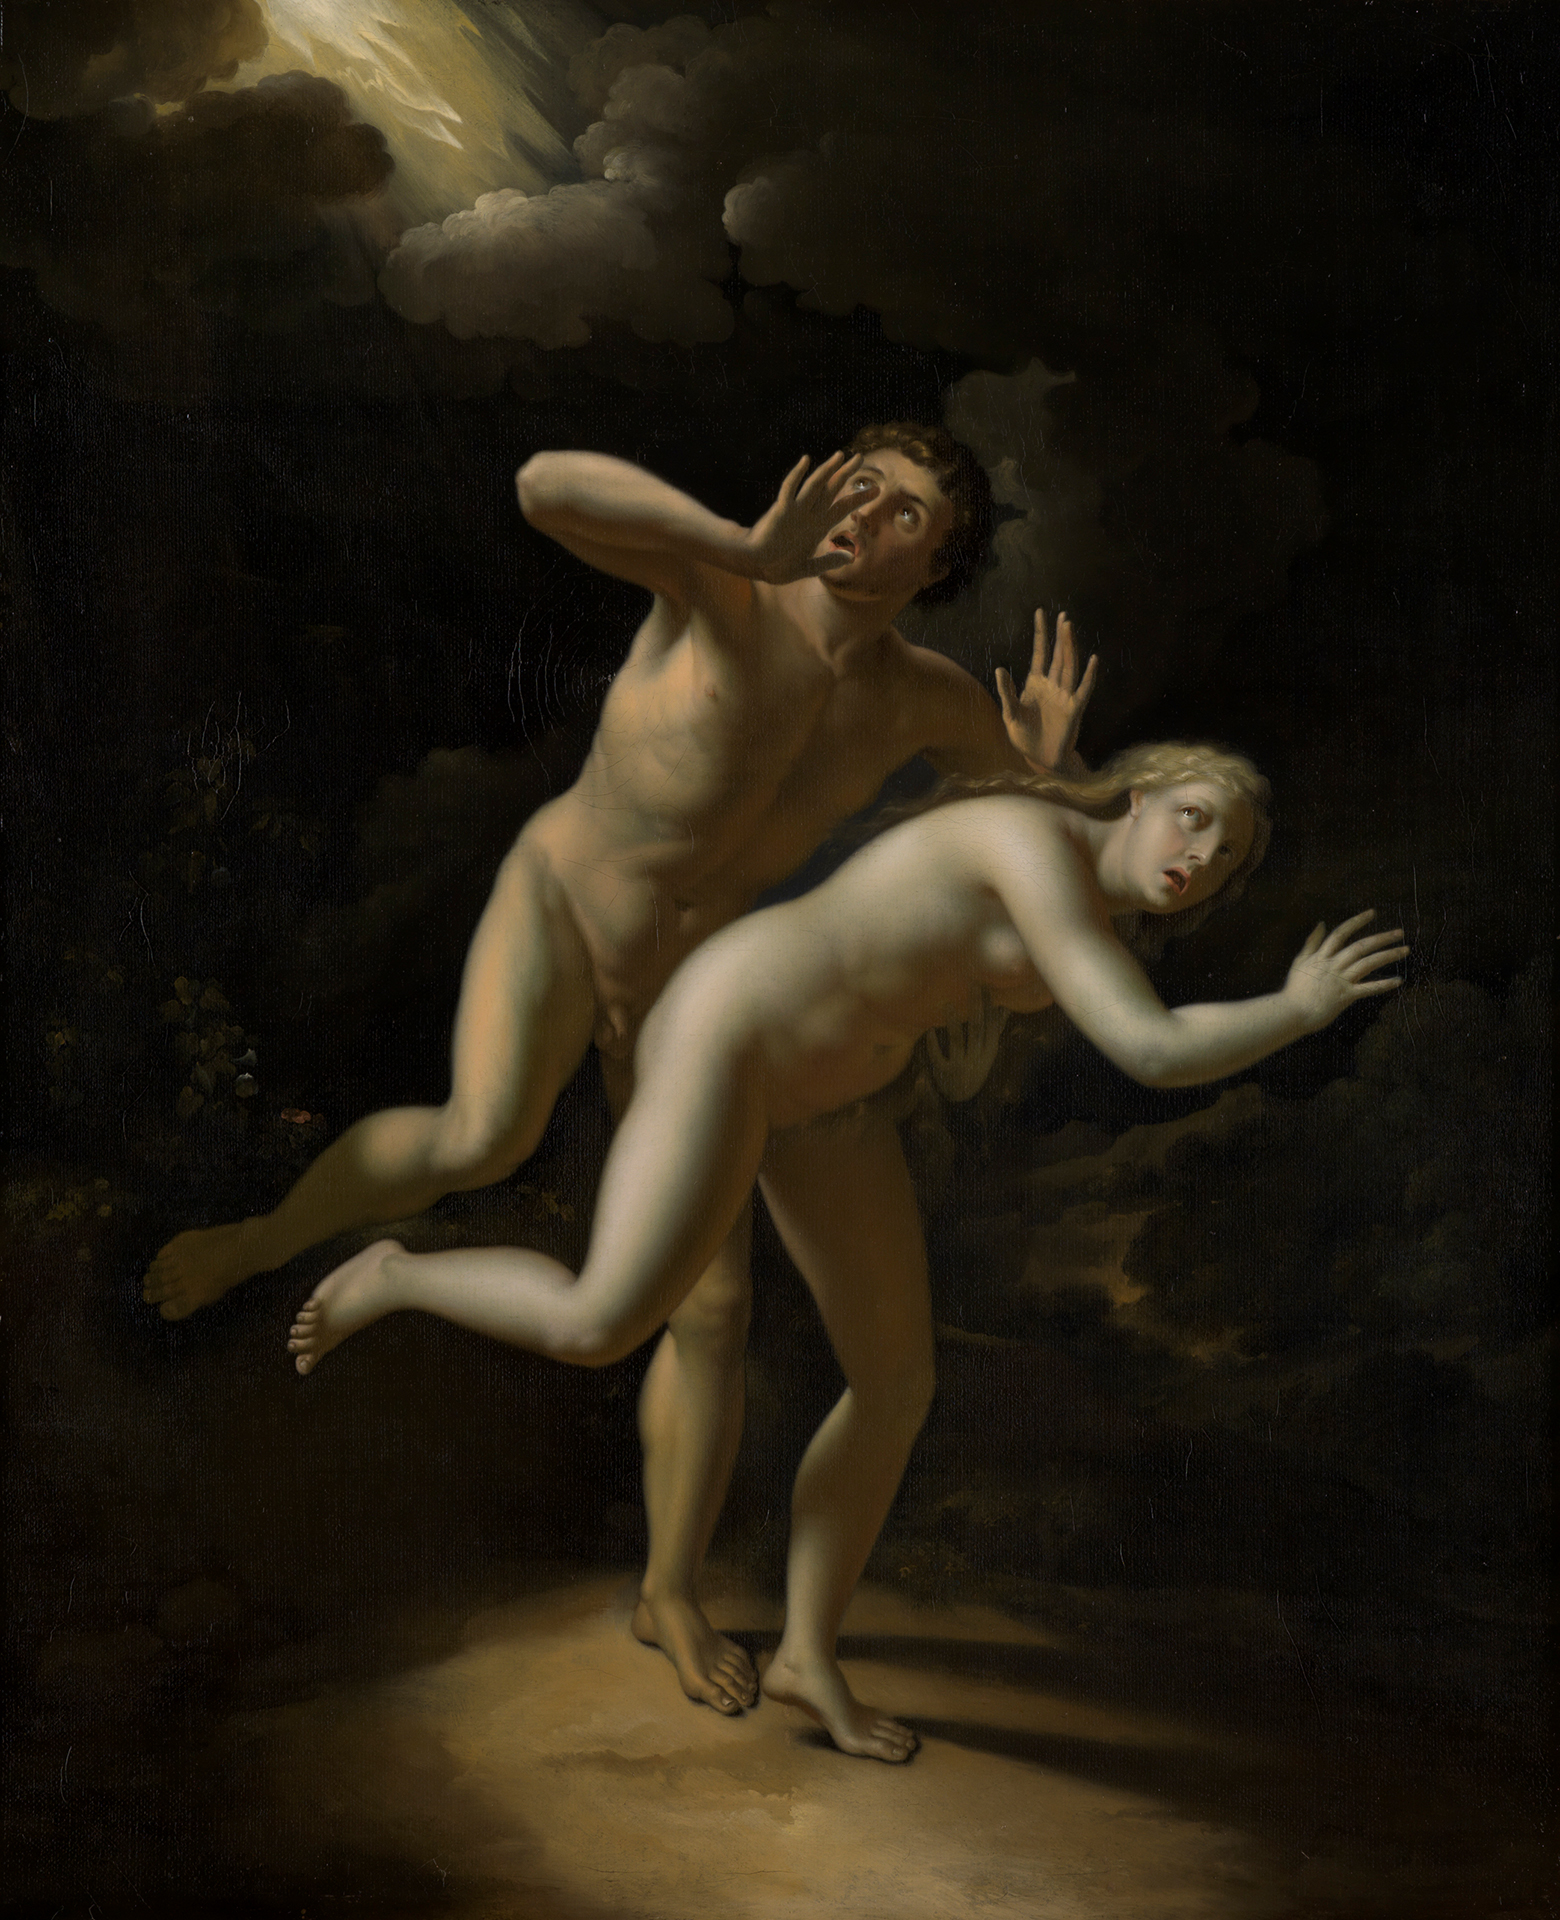 Adam und Eva nackt vor dunklem Hintergrund, in starker Bewegung. Beide nach vorn geneigt, Adam hinter Eva. In Angs nach oben gereckte Arme. Adam blickt hinter sich, wo ein Blitz aus den Wolken tritt.